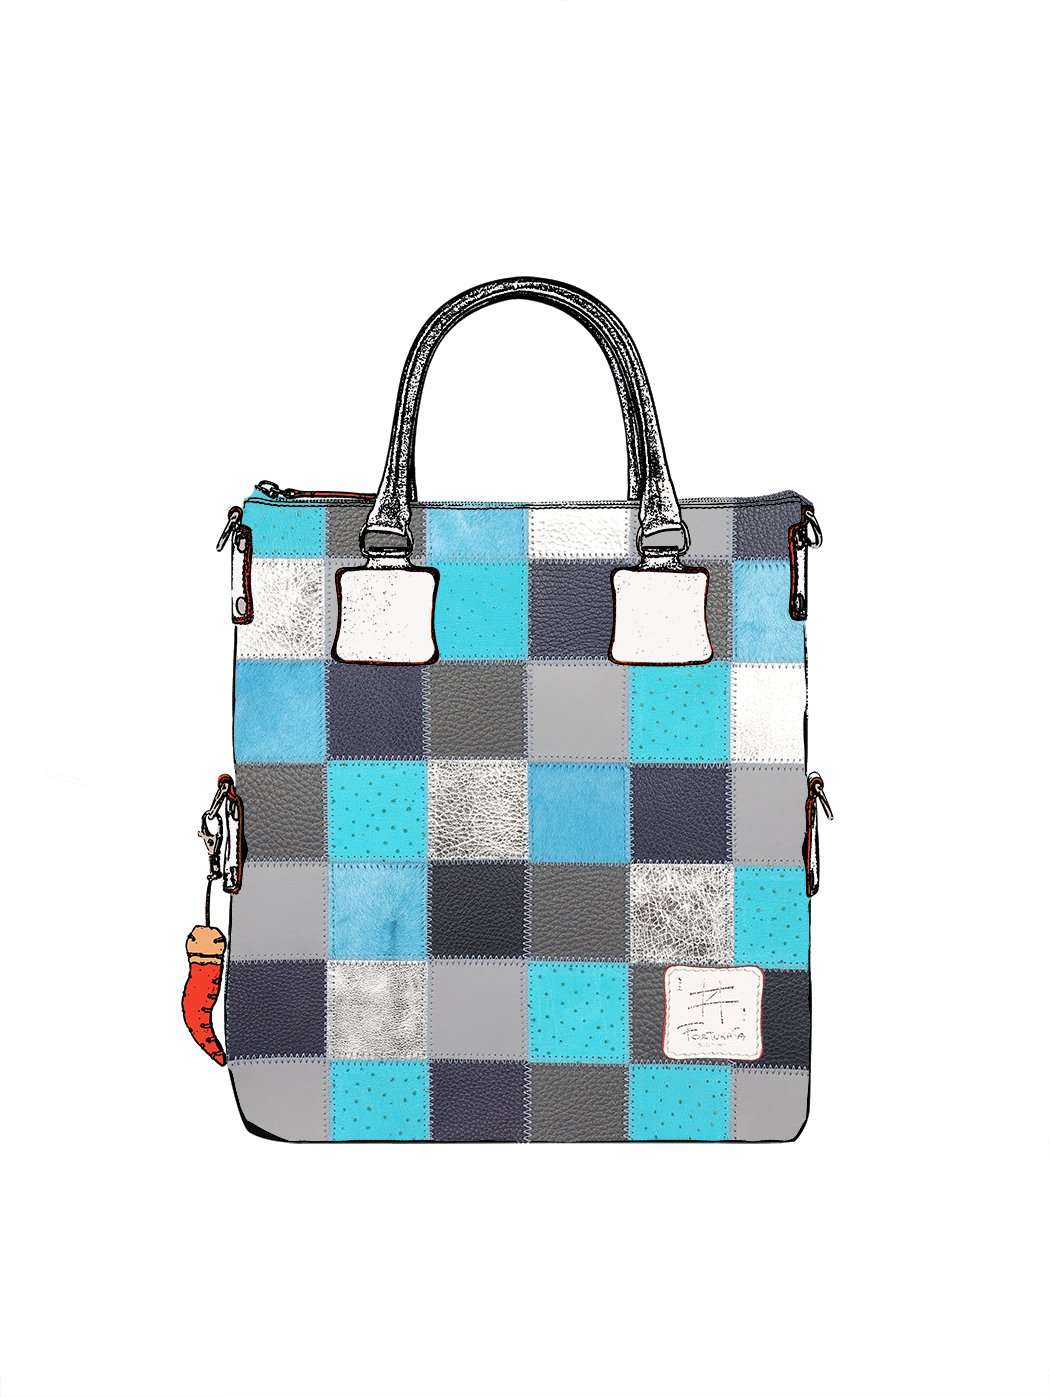 Дизайнерская сумка из коллекции Fortunata в стиле пэчворк серо - голубого цвета